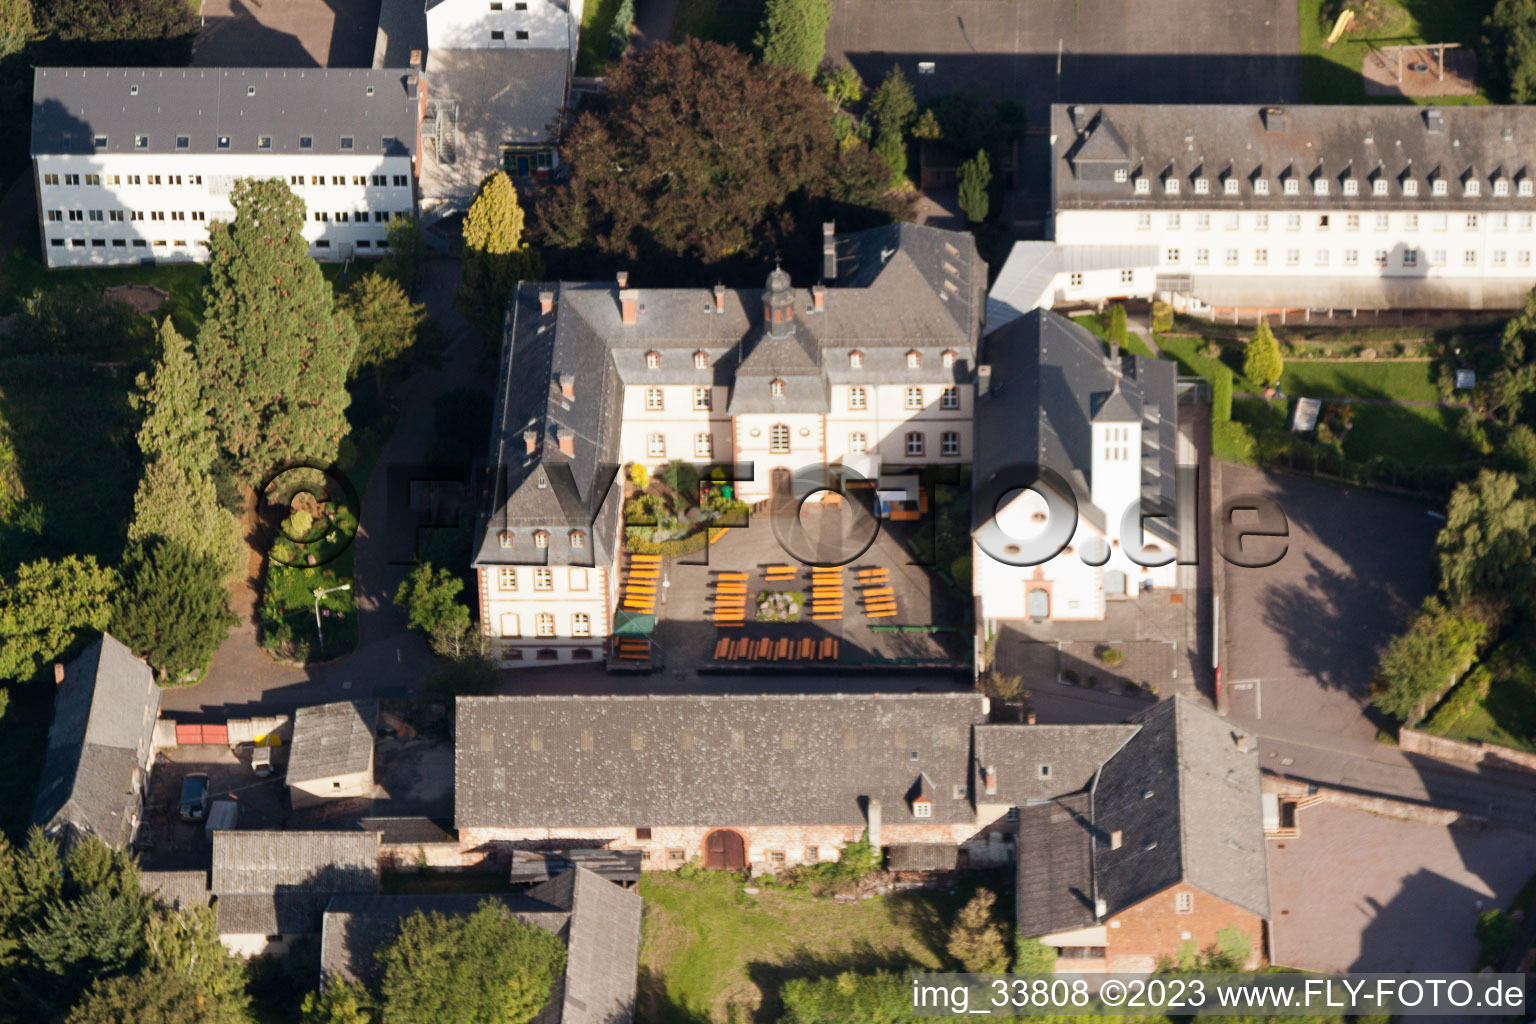 Luftbild von Taben-Rodt, Propstey St. Josef - Jugendhilfeeinrichtung im Bundesland Saarland, Deutschland